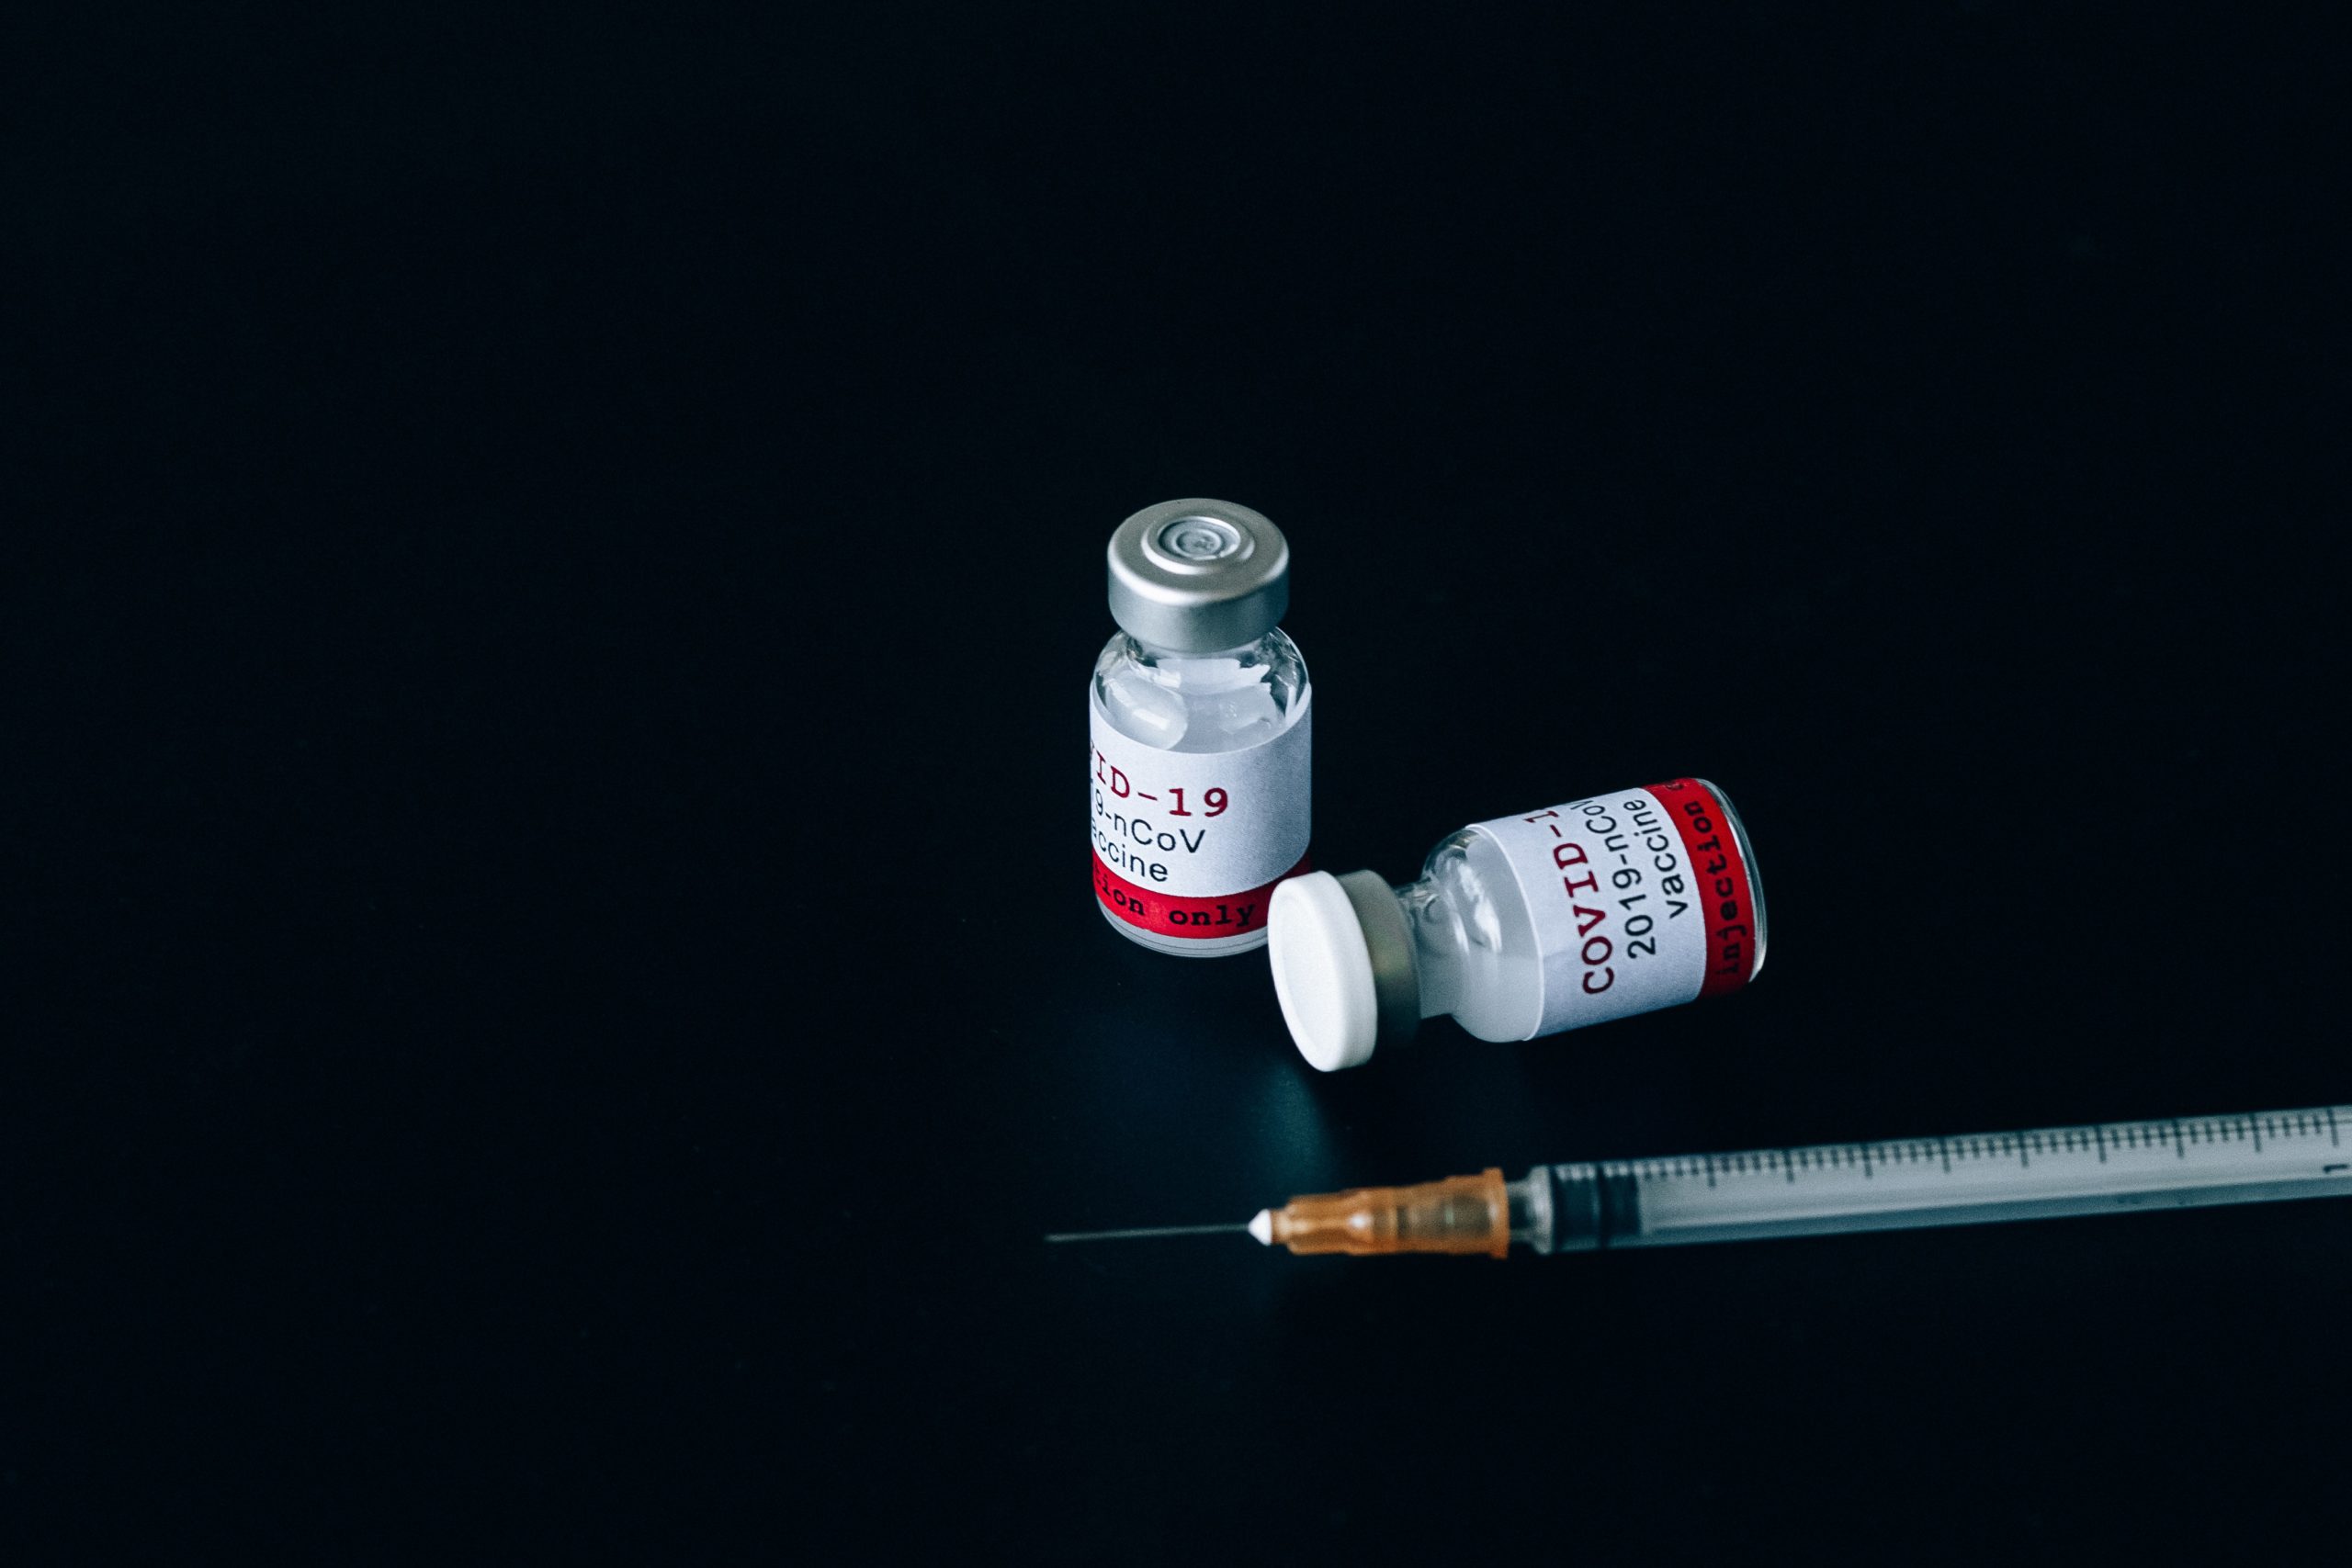 COVID-19: वैक्सीन की दोनों खुराक लेने वाले लोगों में कोरोना से मौत का खतरा 11 गुना कम - अमेरिकी अधिकारी